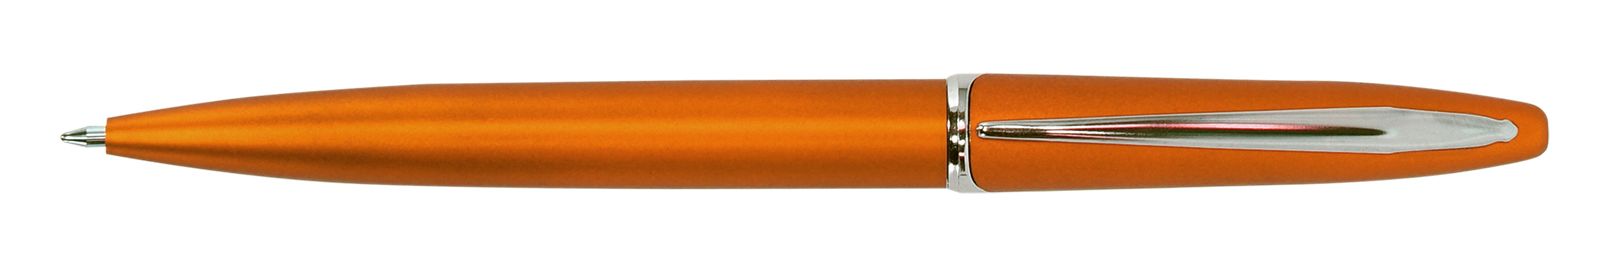 Ручка для логотипа шариковая автоматическая INFORMAT INSPIRATION 0,7 мм, синяя, оранжевый корпус оптом